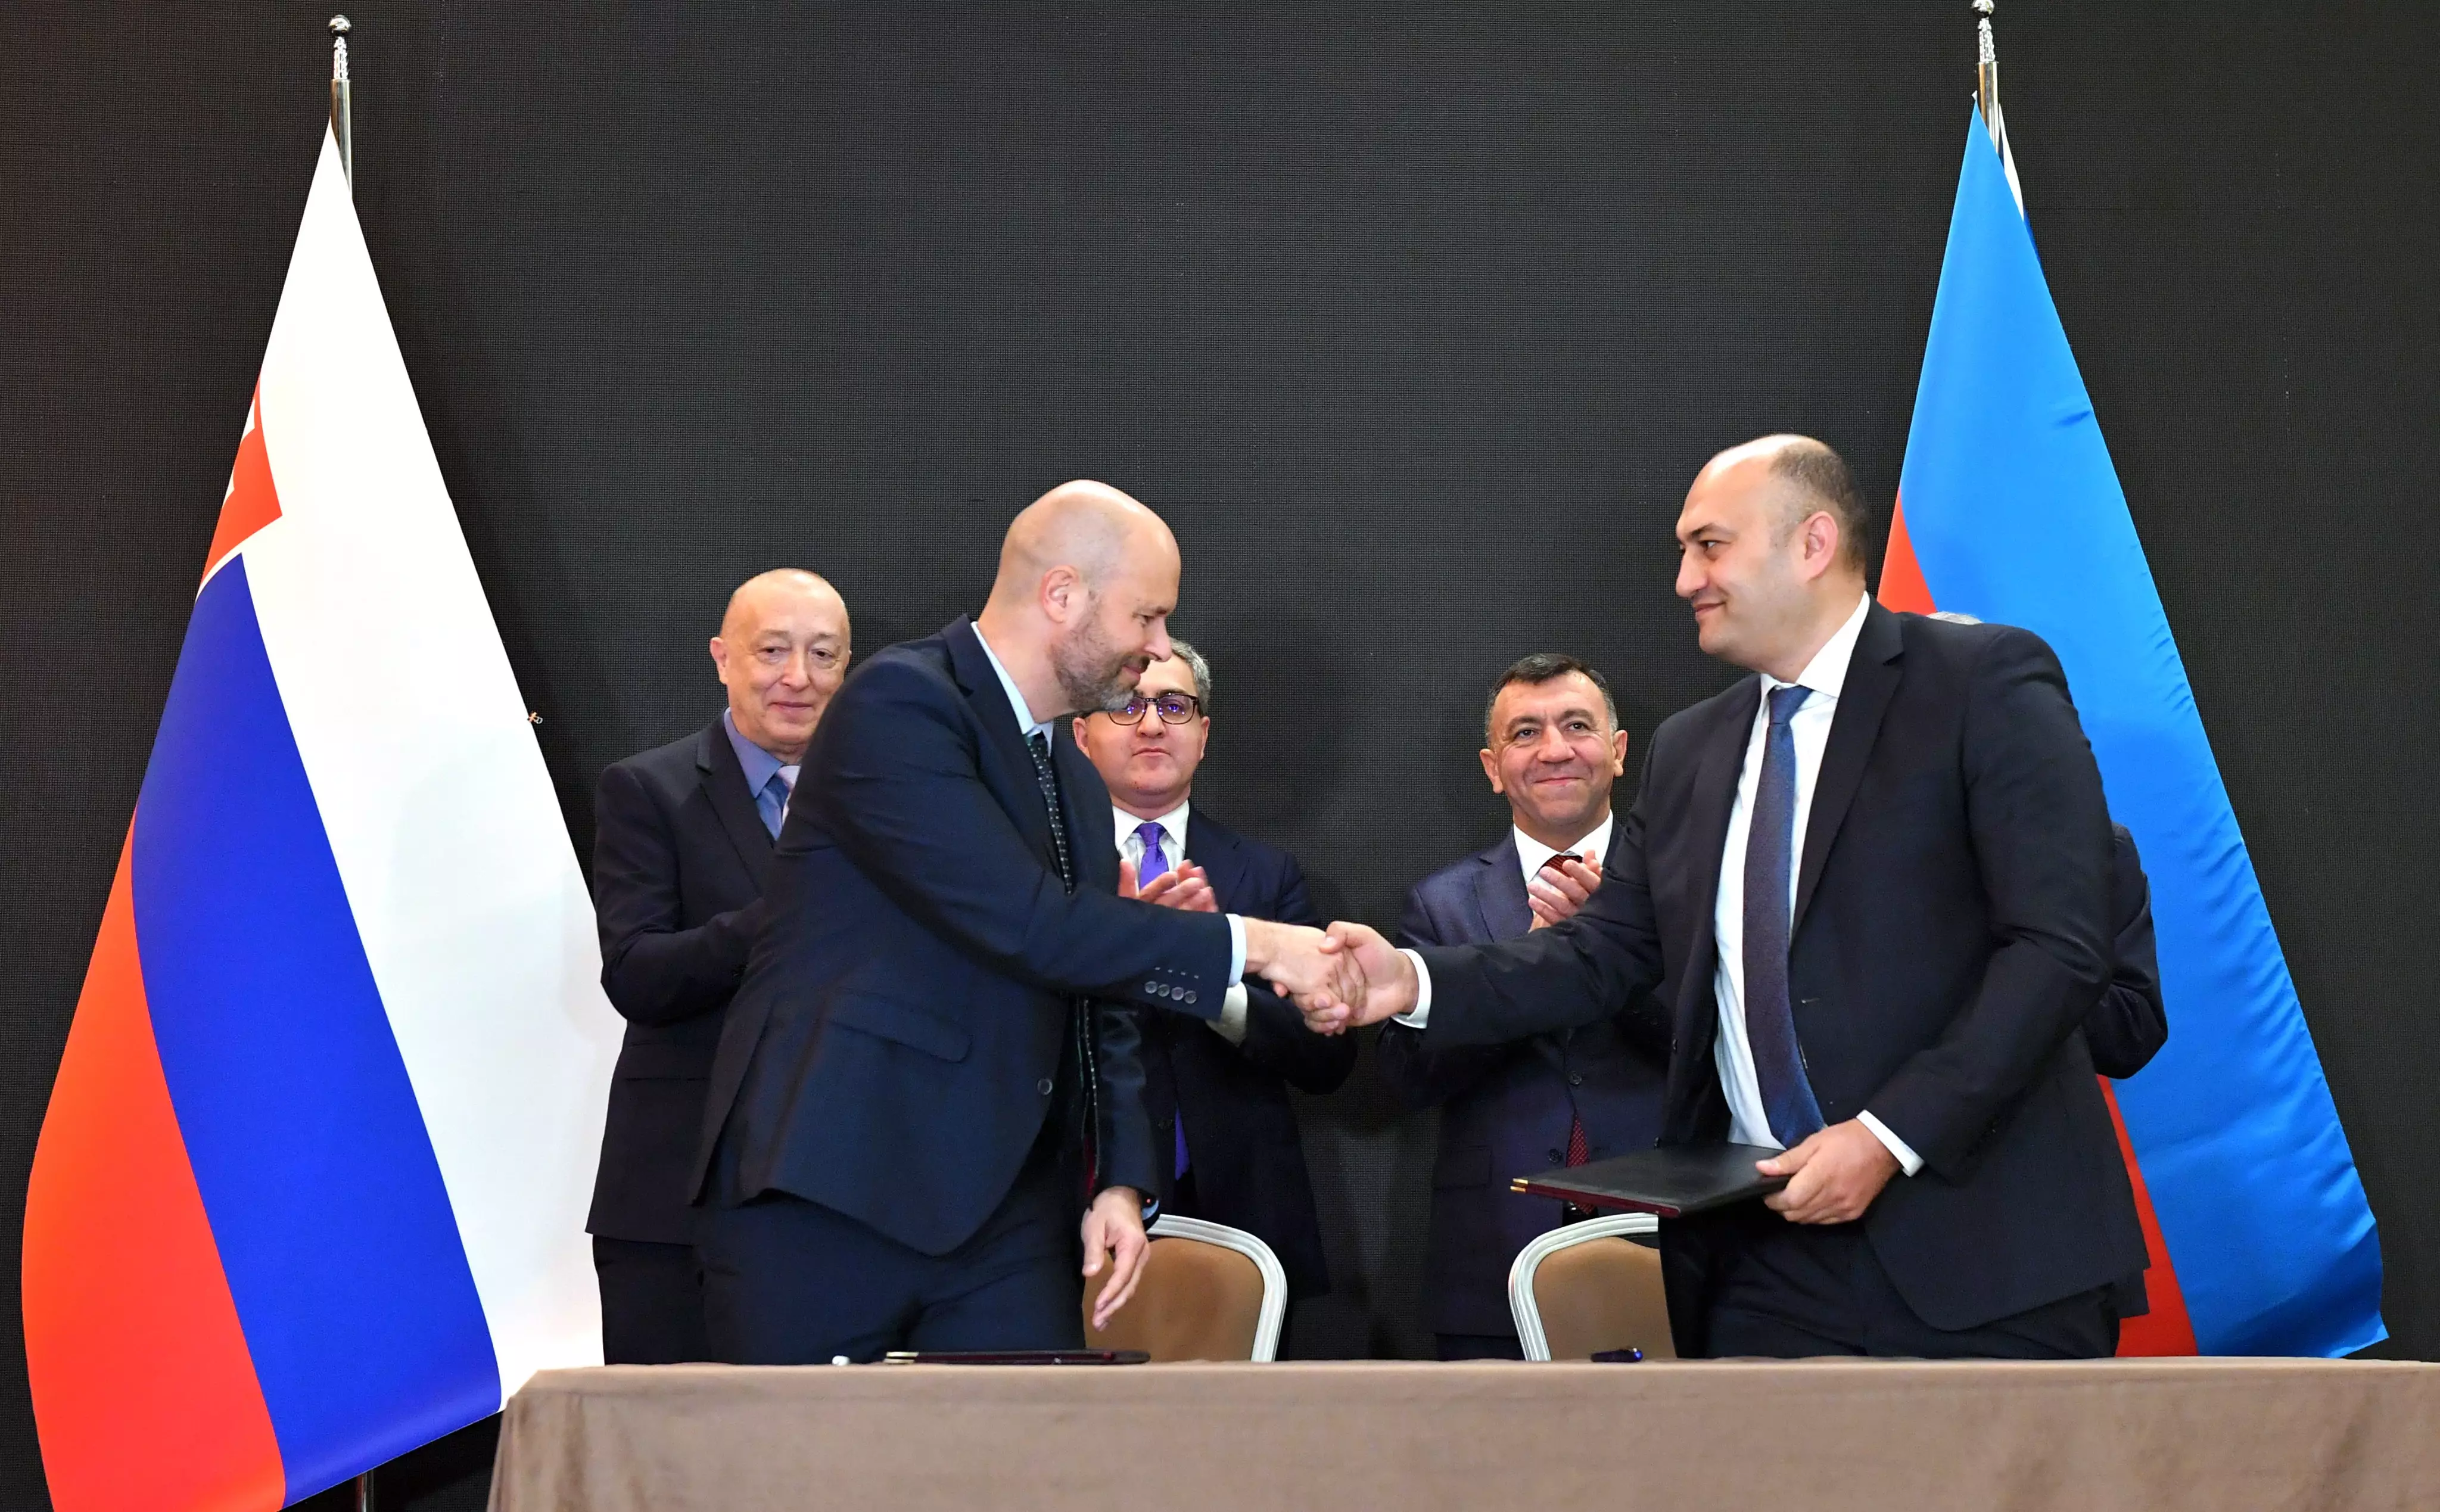 Azərbaycan - Slovakiya biznes forumu çərçivəsində əməkdaşlıq memorandumları imzalanıb